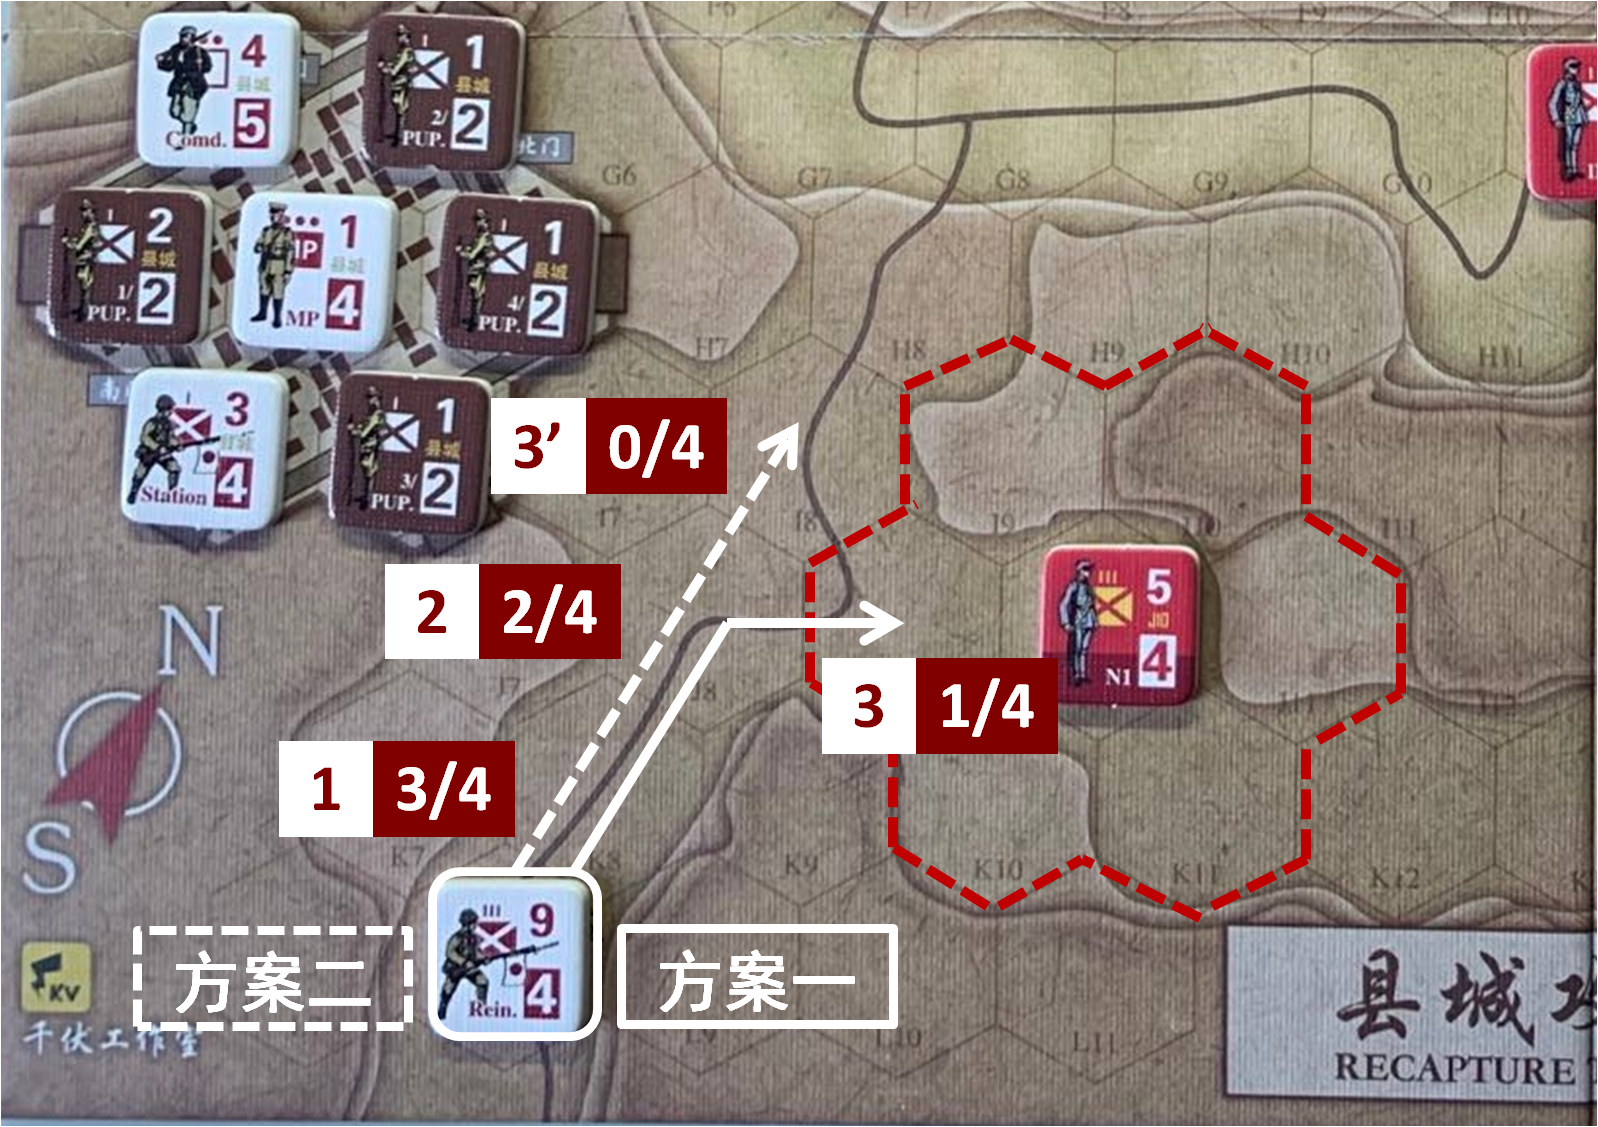 如果共軍正規部隊N1保持初設位置不變（J10），至本回合日方移動階段時，初始位於趙莊方向（L8）的日軍增援部隊可能採取的移動方案